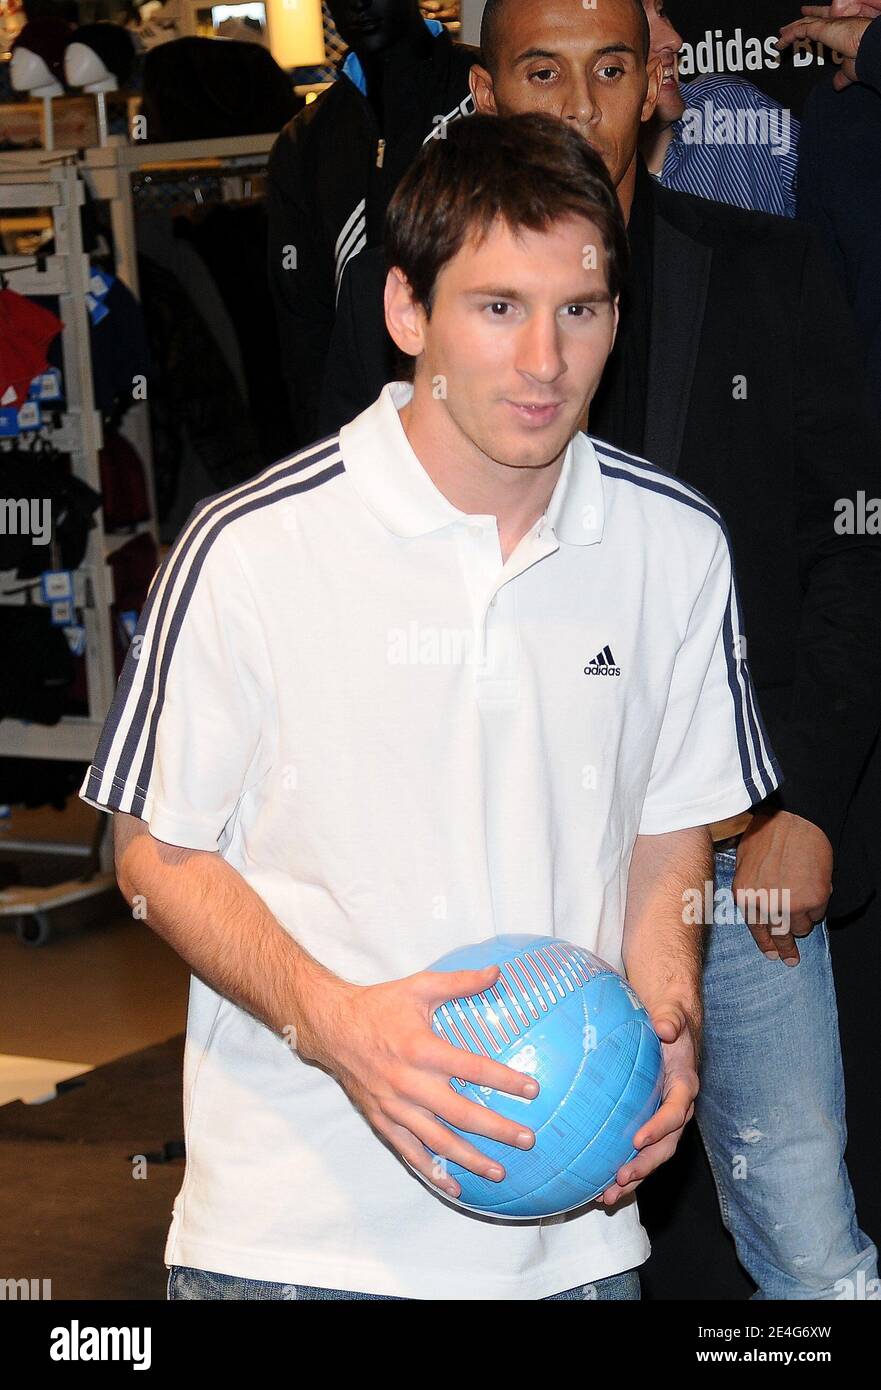 Lionel Messi, joueur de football argentin du FC Barcelone lors d'une  session de dédicace dans un magasin partenaire Adidas sur les  champs-Elysées à Paris, France, le 27 octobre 2009. Lionel Messi est